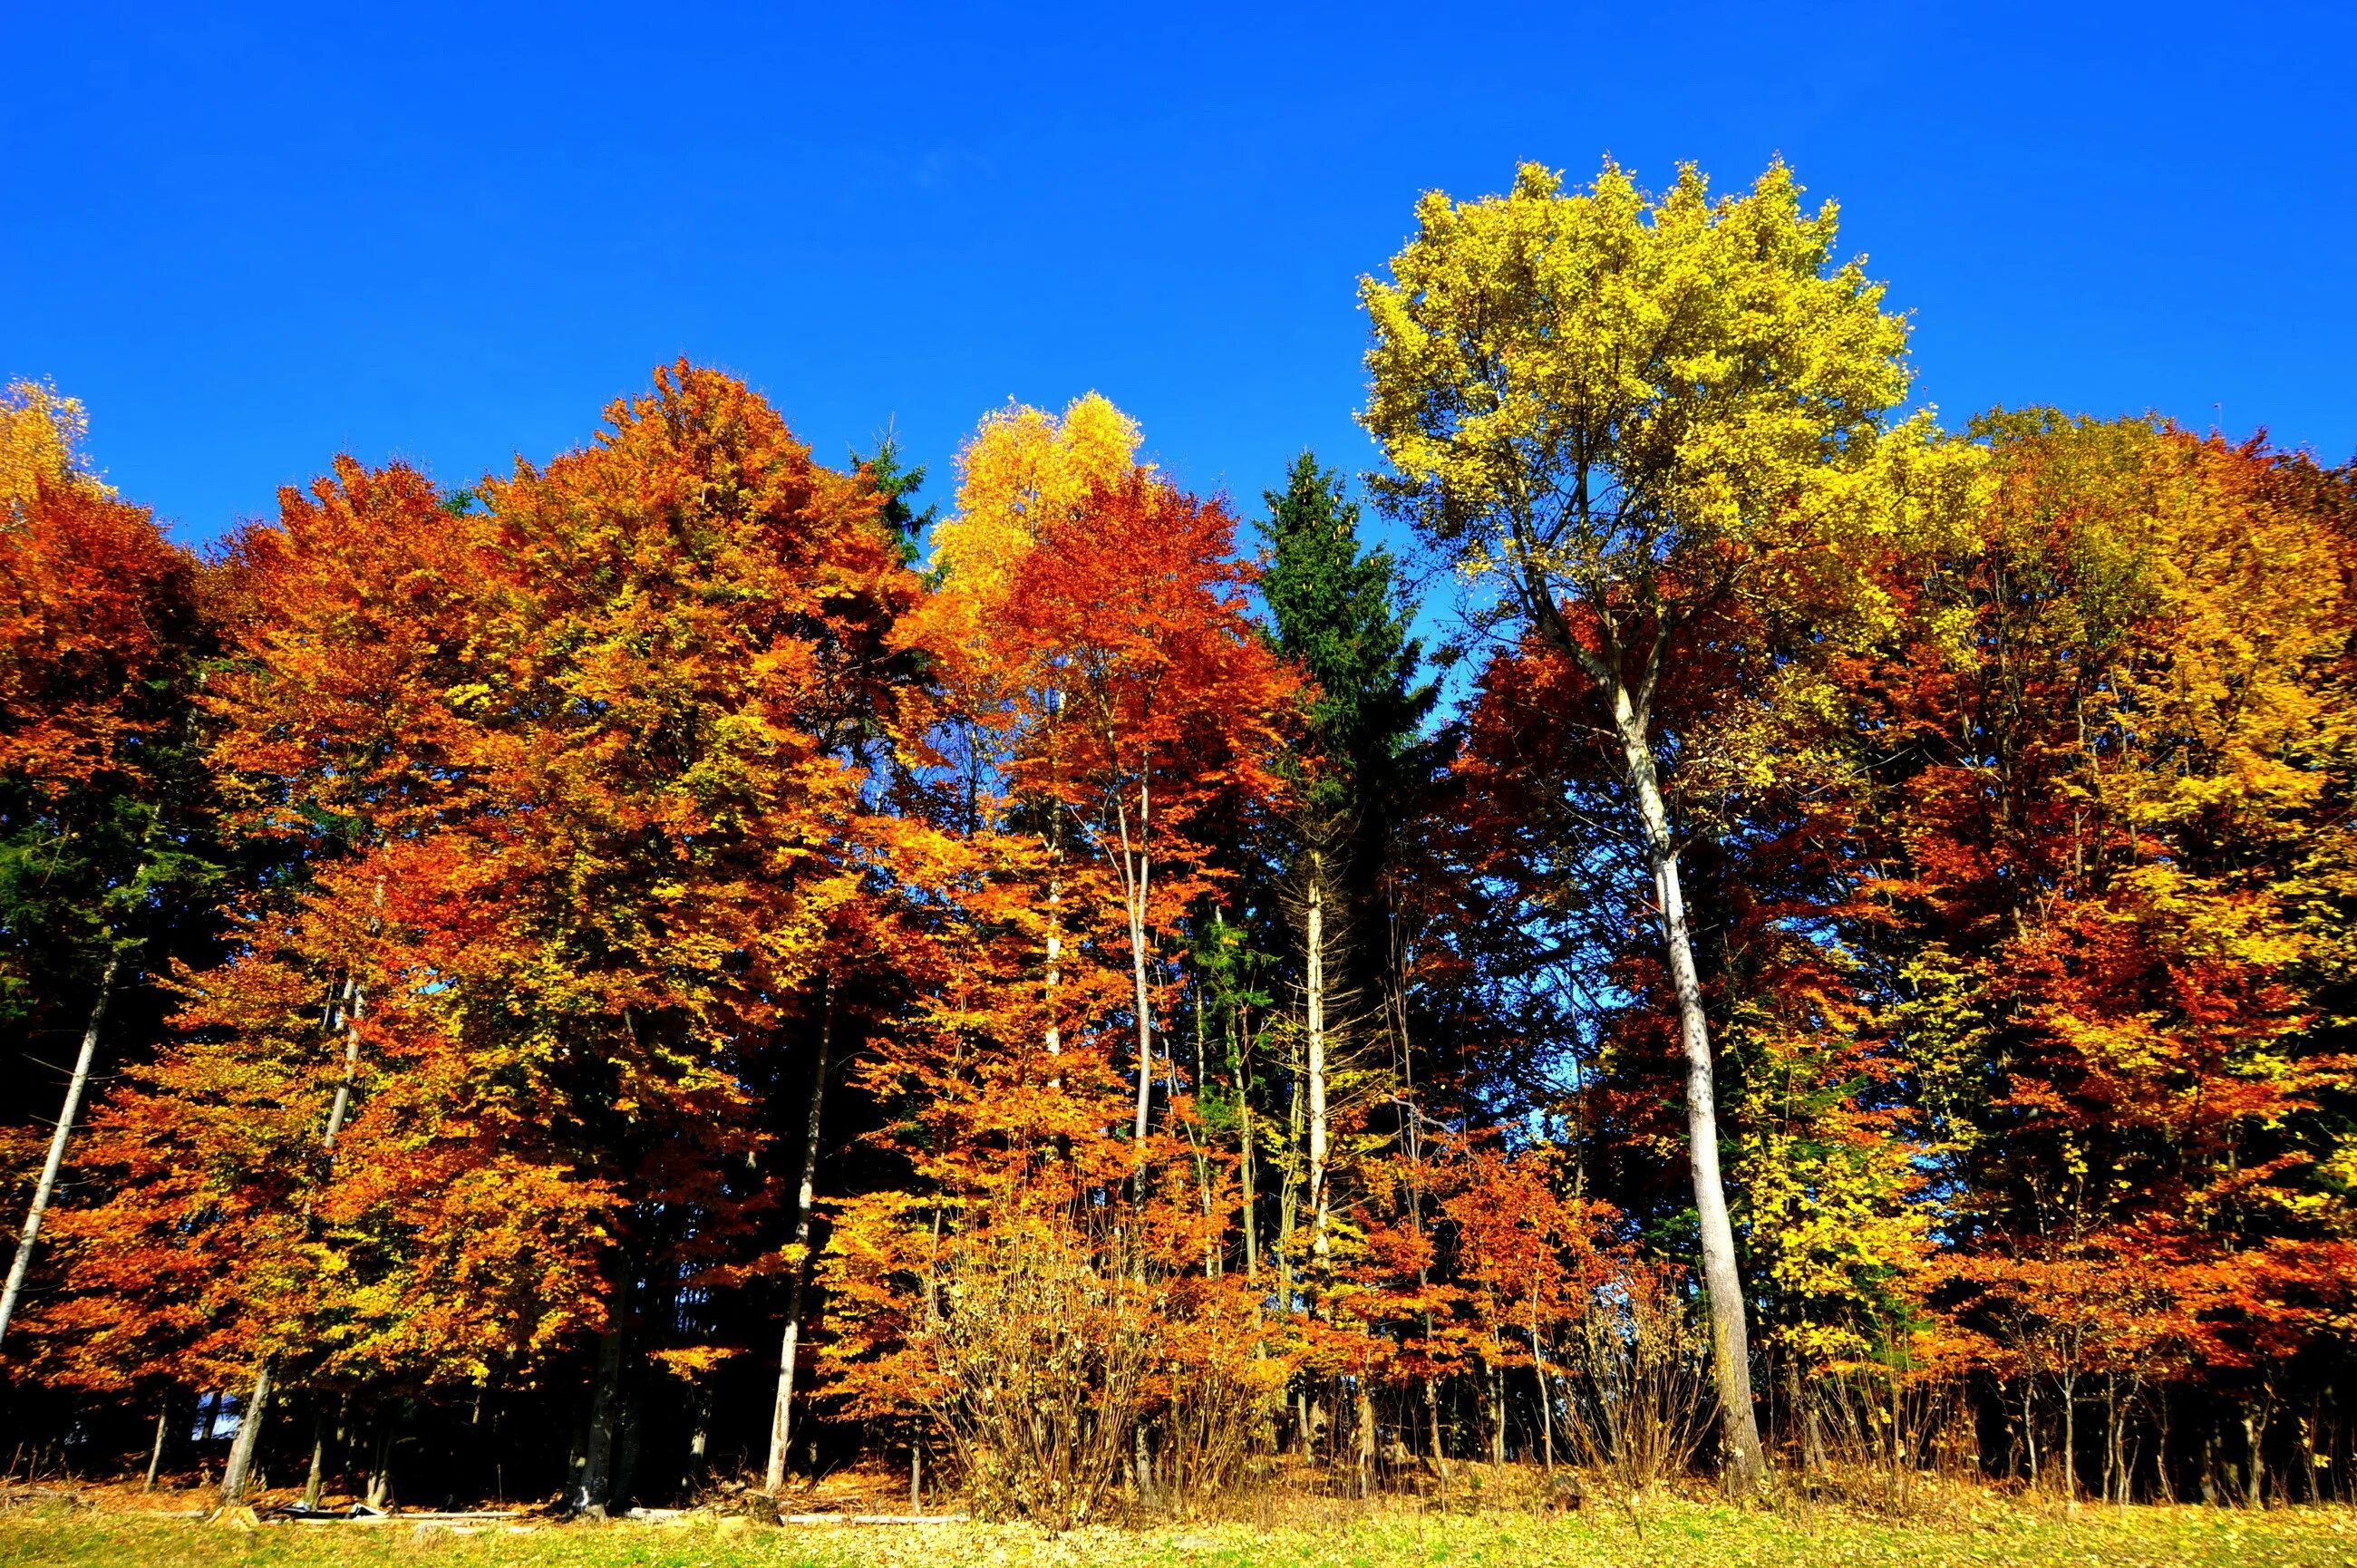 Картинка времена года осень. Осенний лес. Природа осень. Осень в лесу. Времена года осень.